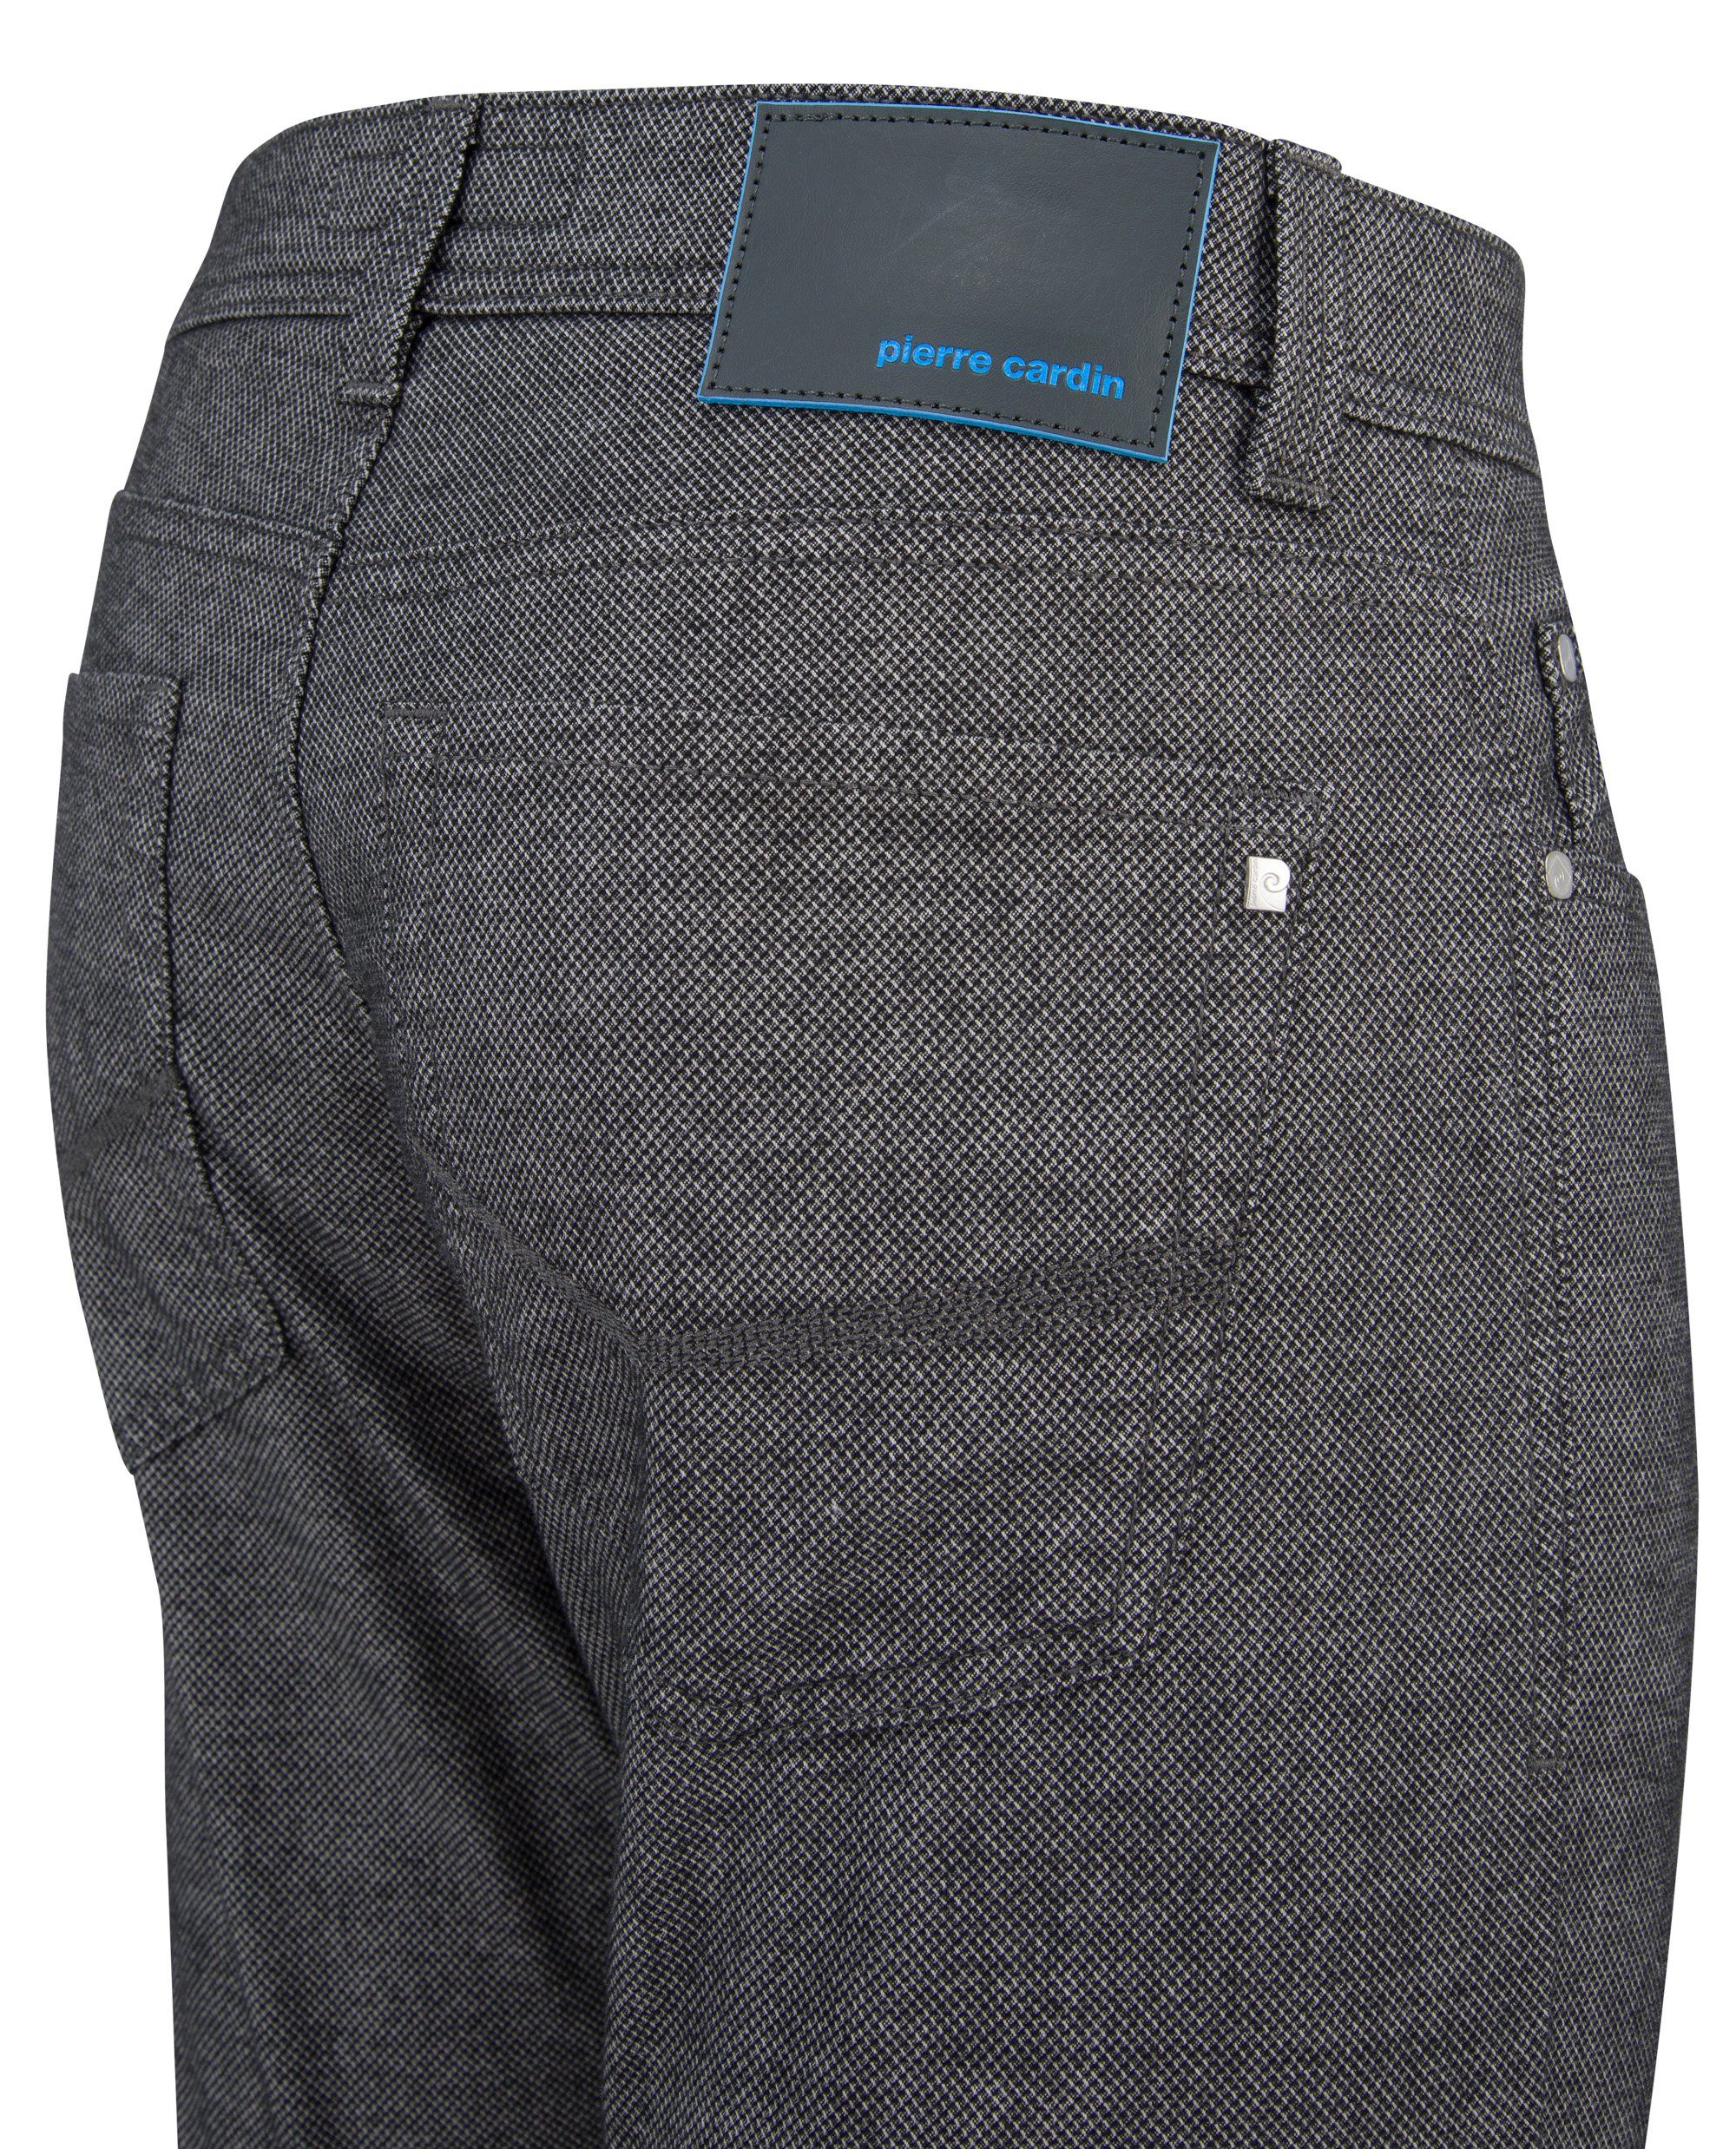 CARDIN grey 4790.82 5-Pocket-Jeans LYON structured Cardin FUTUREFLEX PIERRE 3451 Pierre